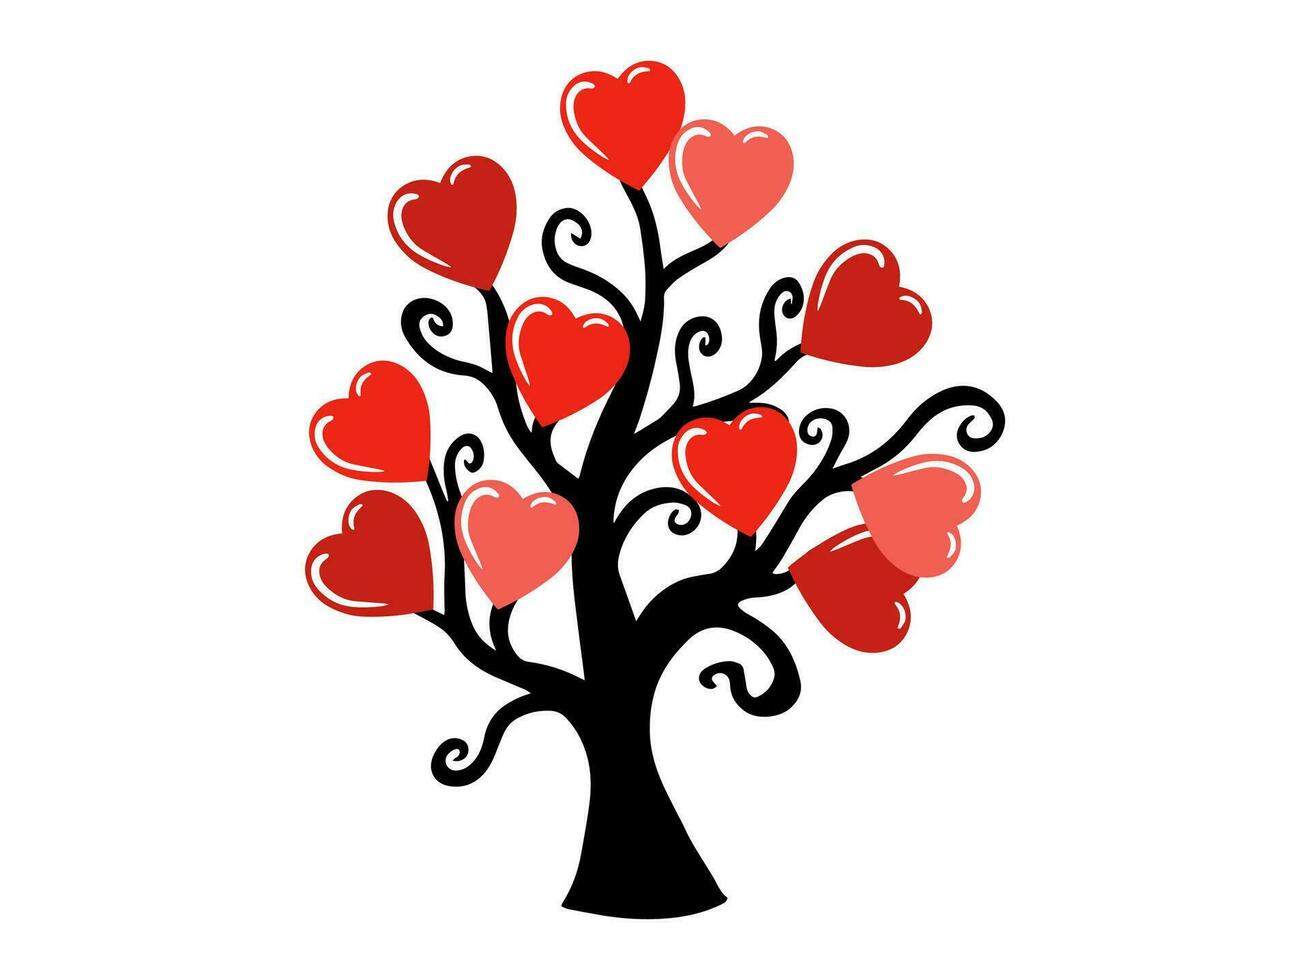 amore albero san valentino giorno illustrazione vettore